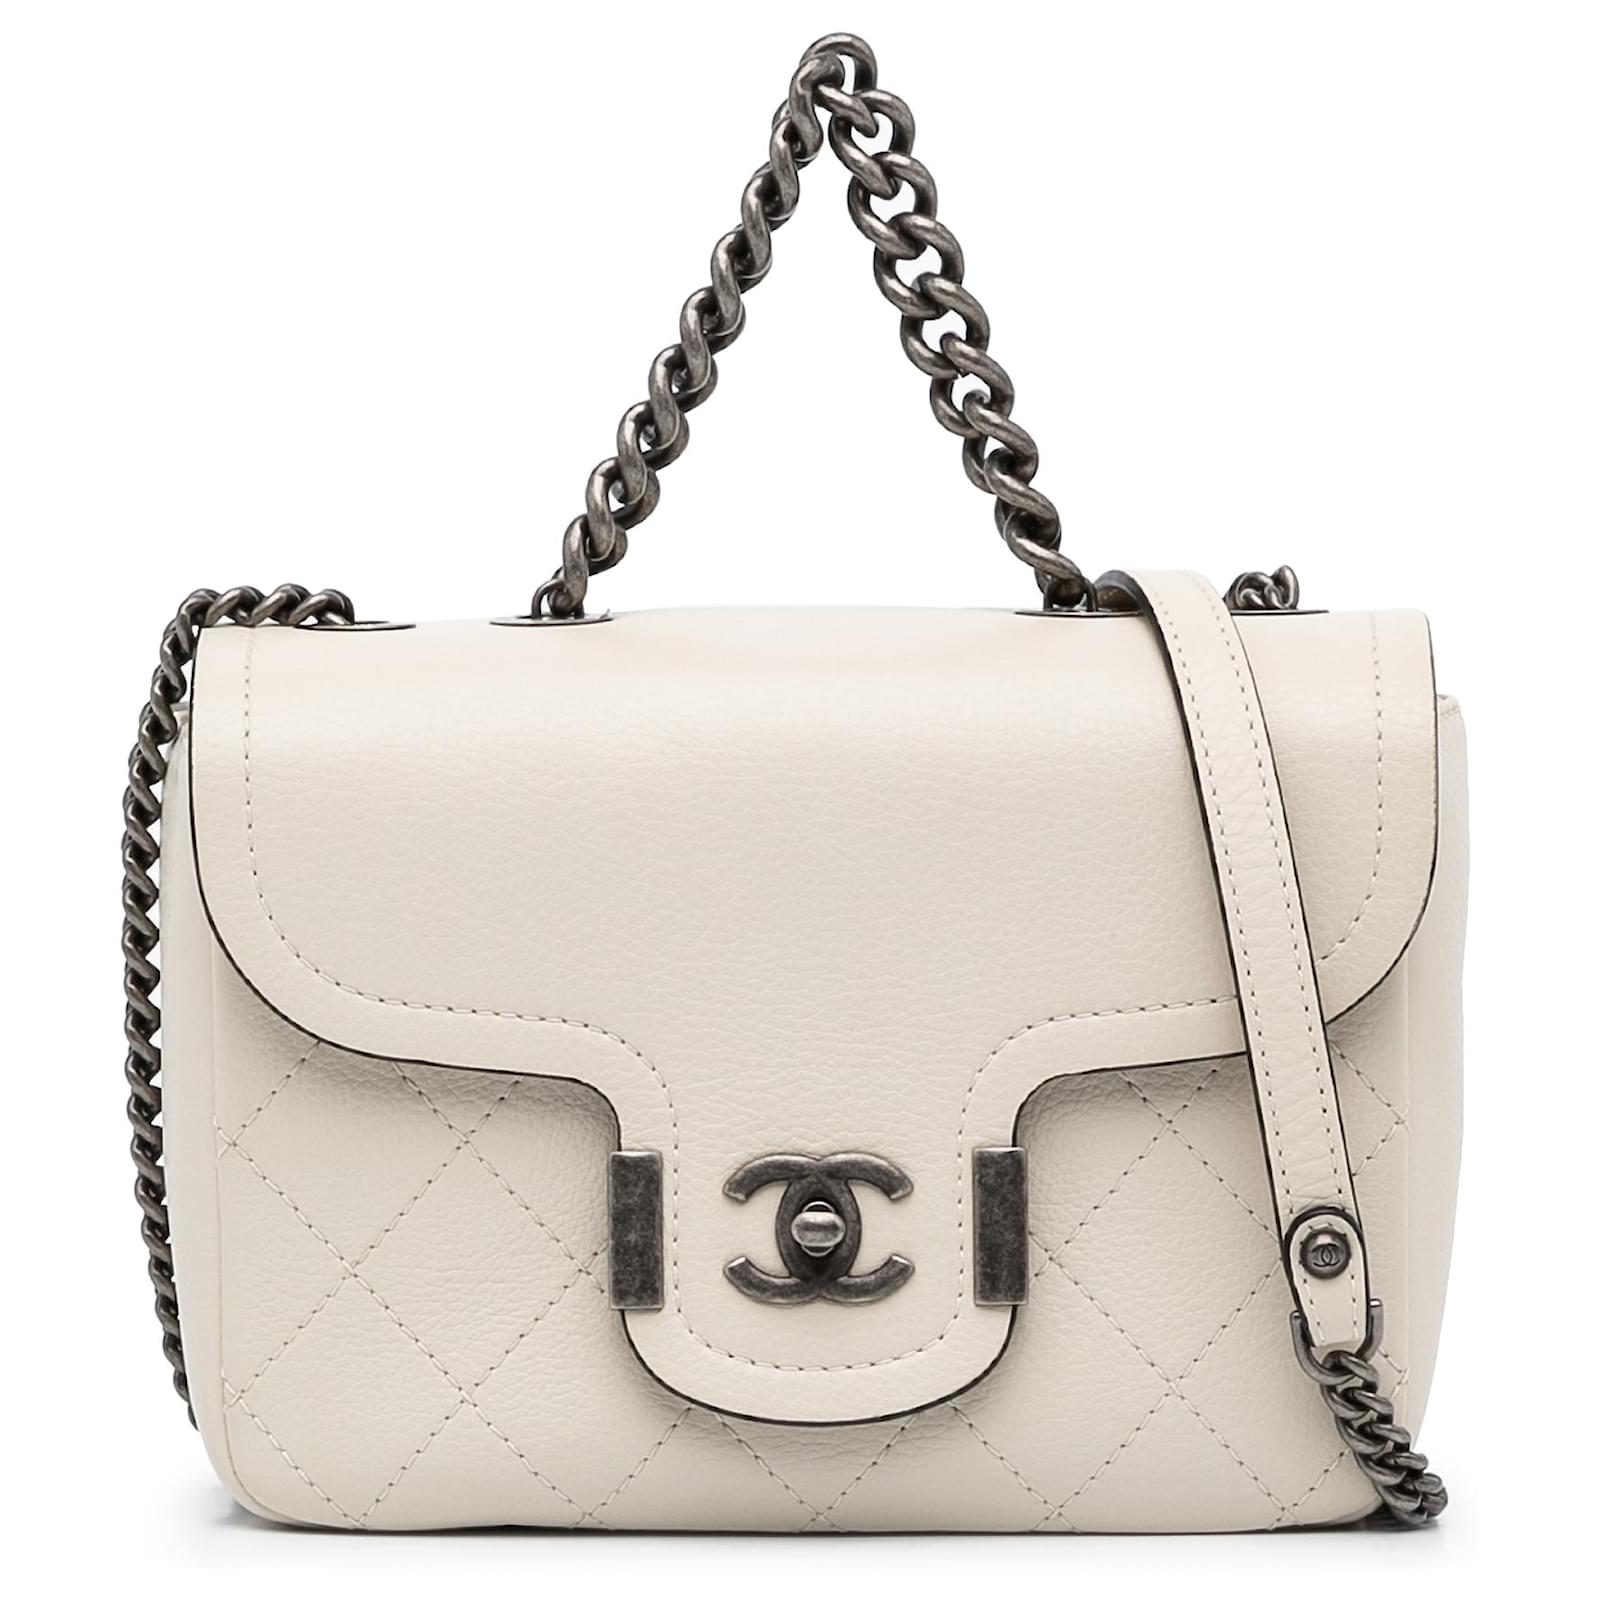 Chanel White Paris-Greece Large Archi Chic Flap Bag